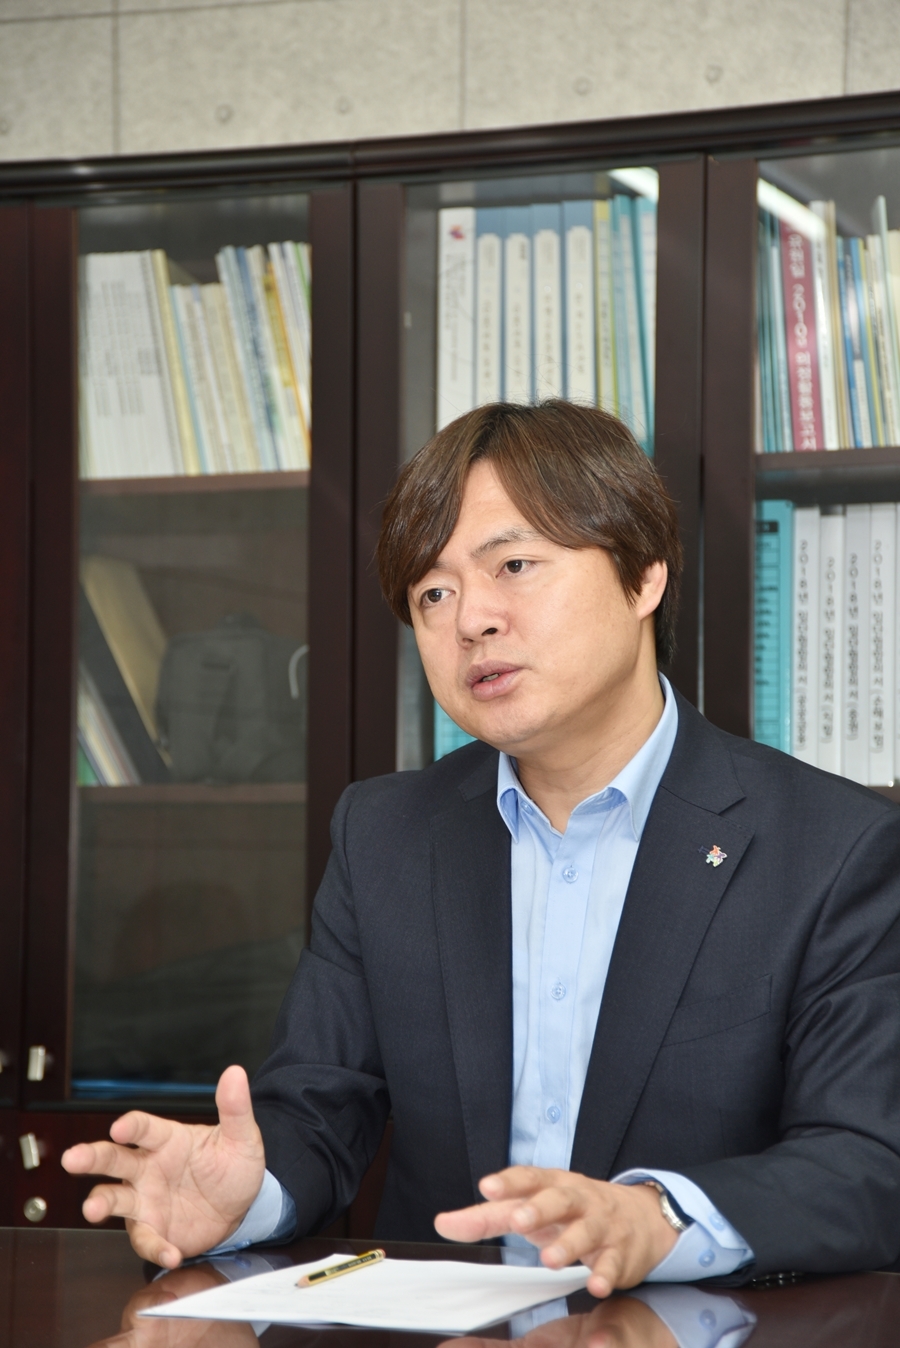 지난 19일 서울 마포구 전국사무금융서비스노동조합 사무실에서 김현정 노조위원장이 카드수수료 갈등의 원인을 설명하고 있다.